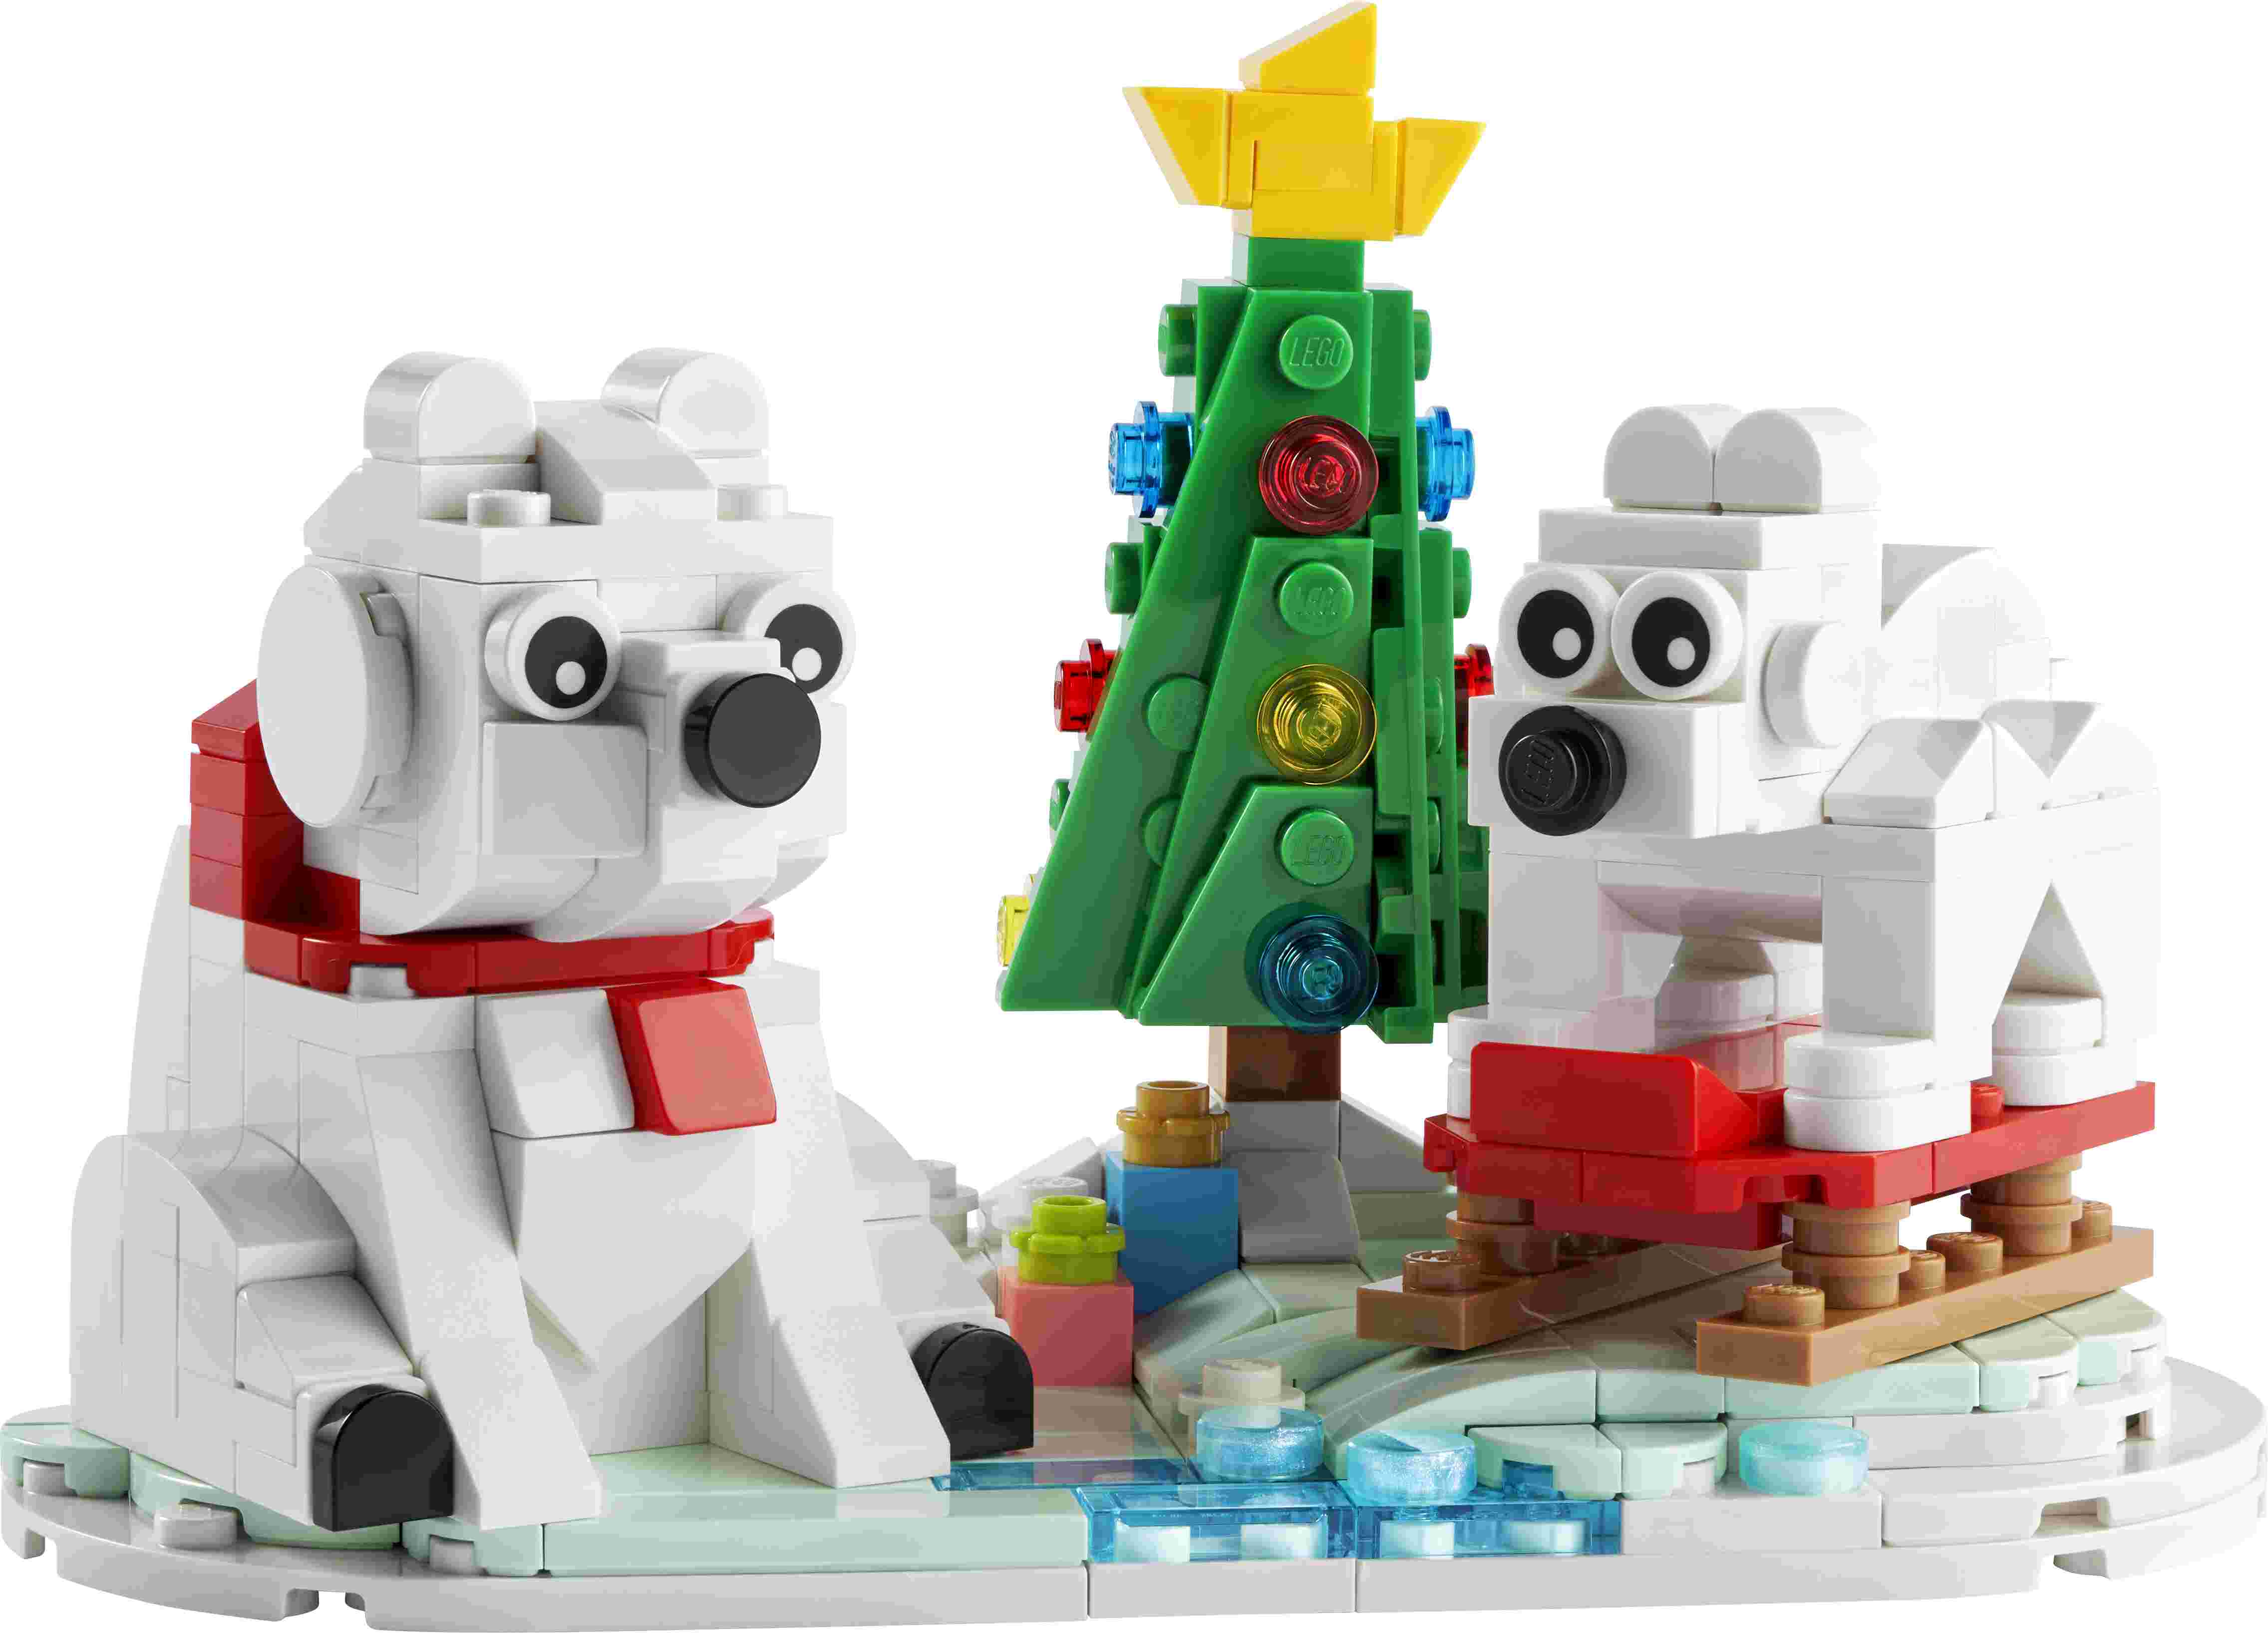 LEGO 40571 Iconic Eisbären im Winter, drehbare Grundplatte, Eisbärenjunges